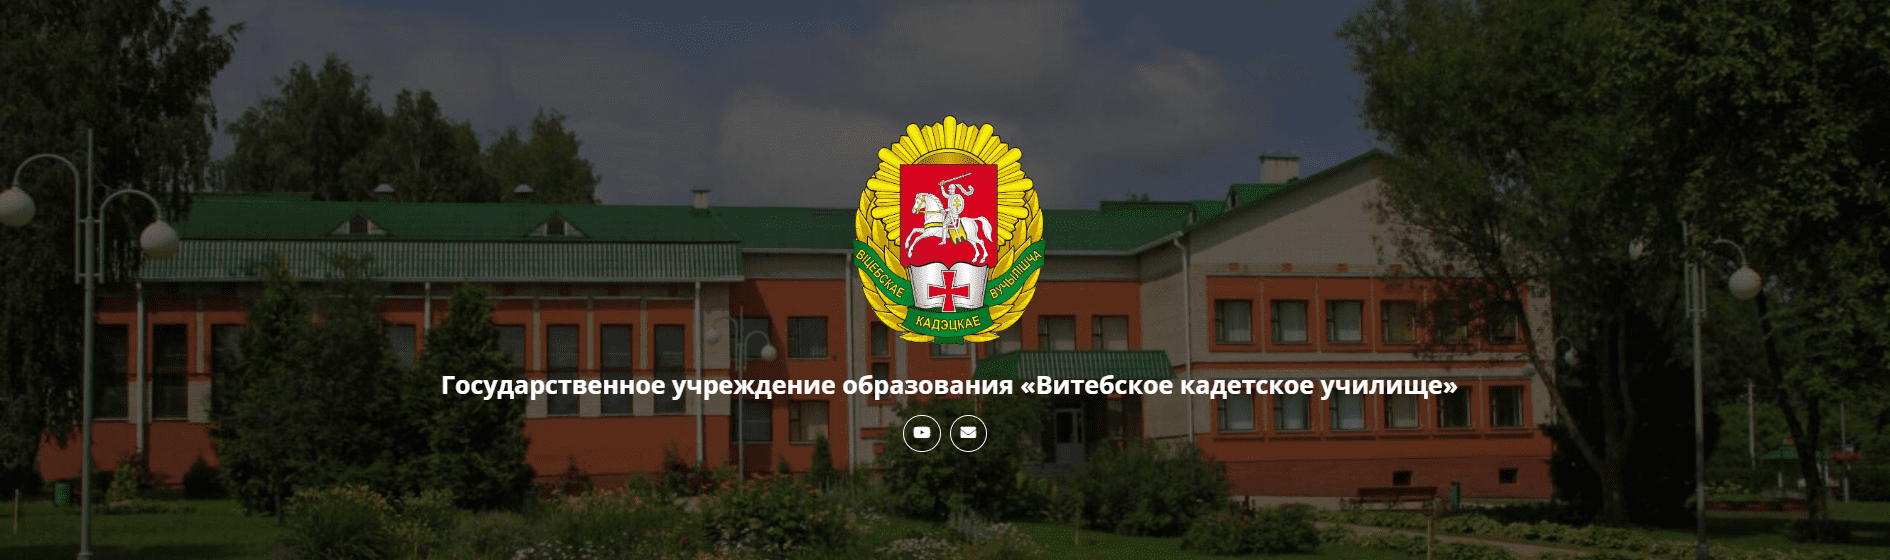 Витебское кадетское училище (vku.by)